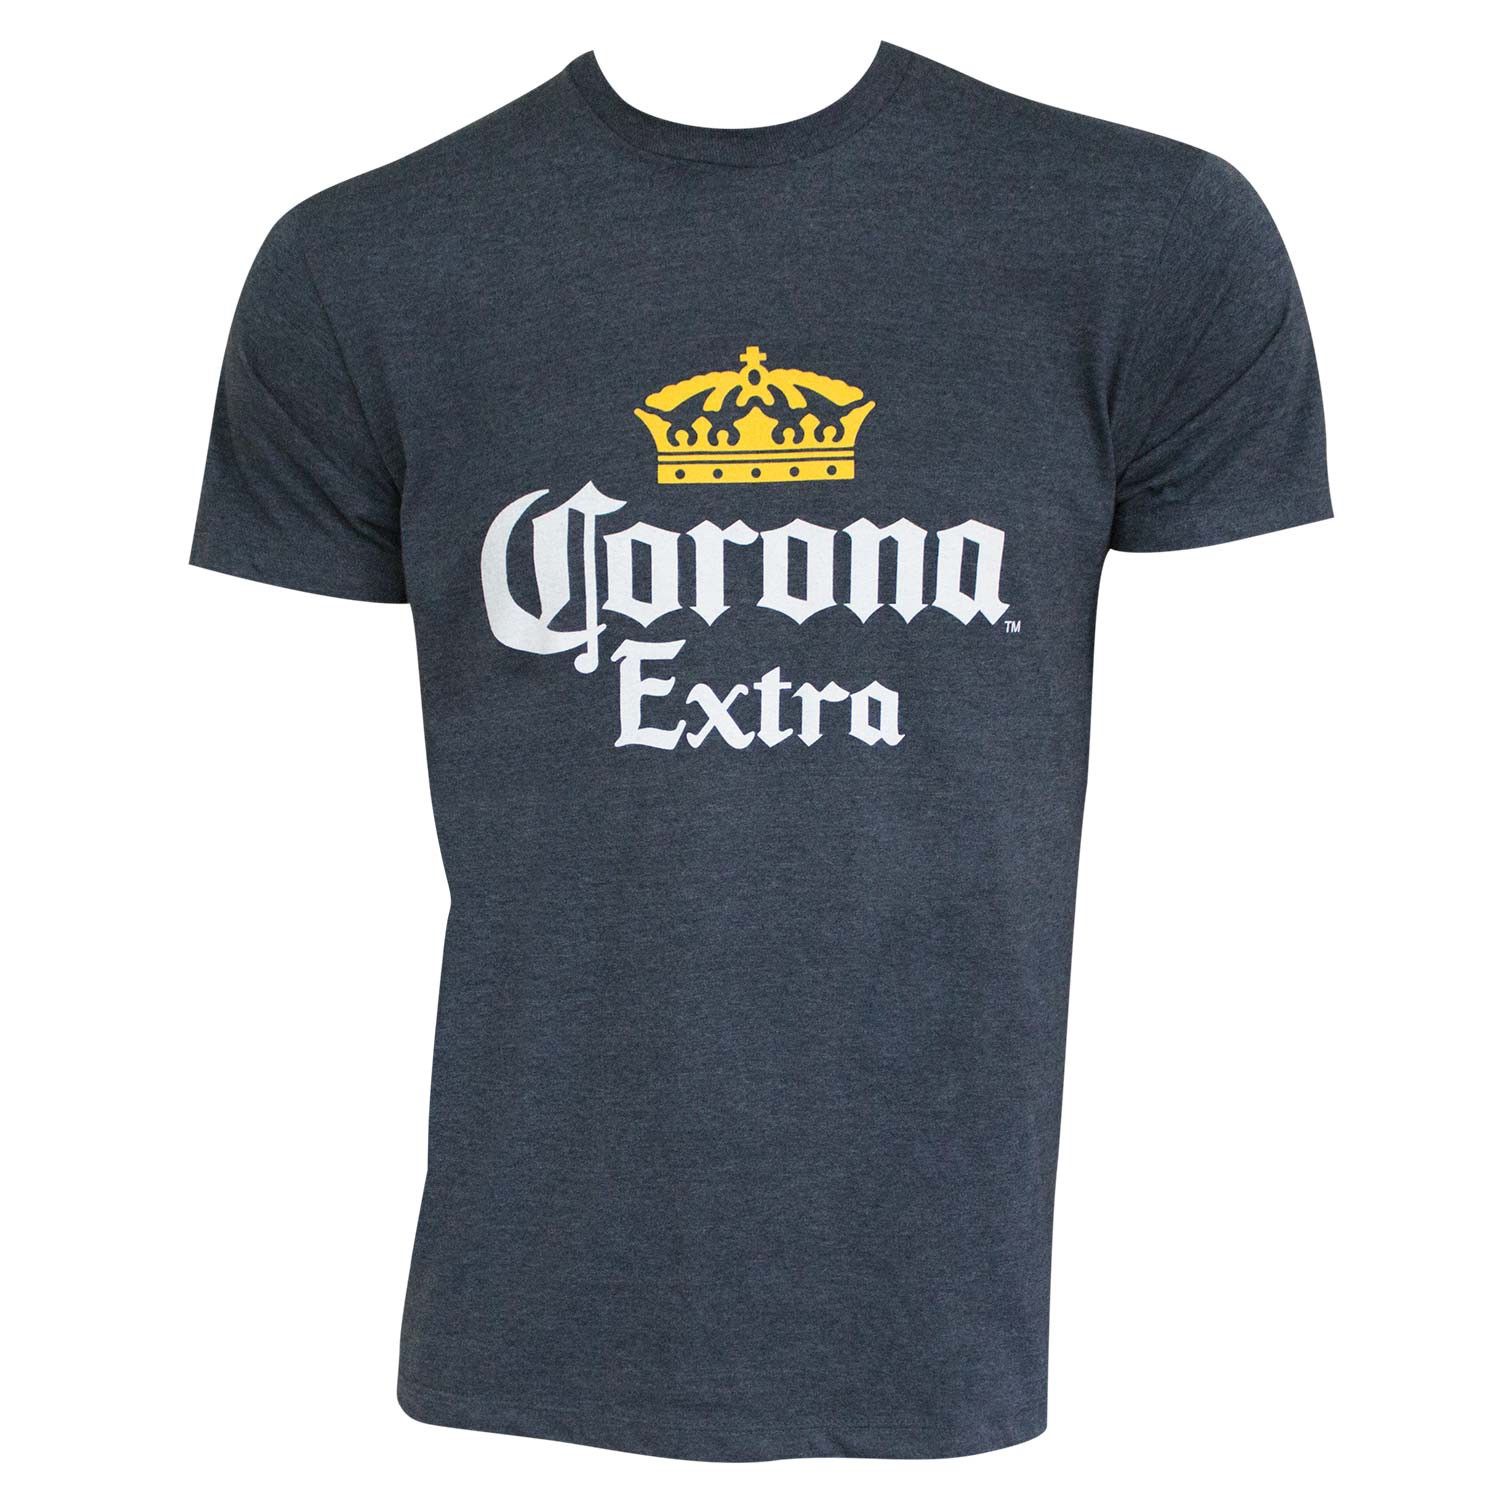 Corona Extra Basic Heather Blue Tee Shirt